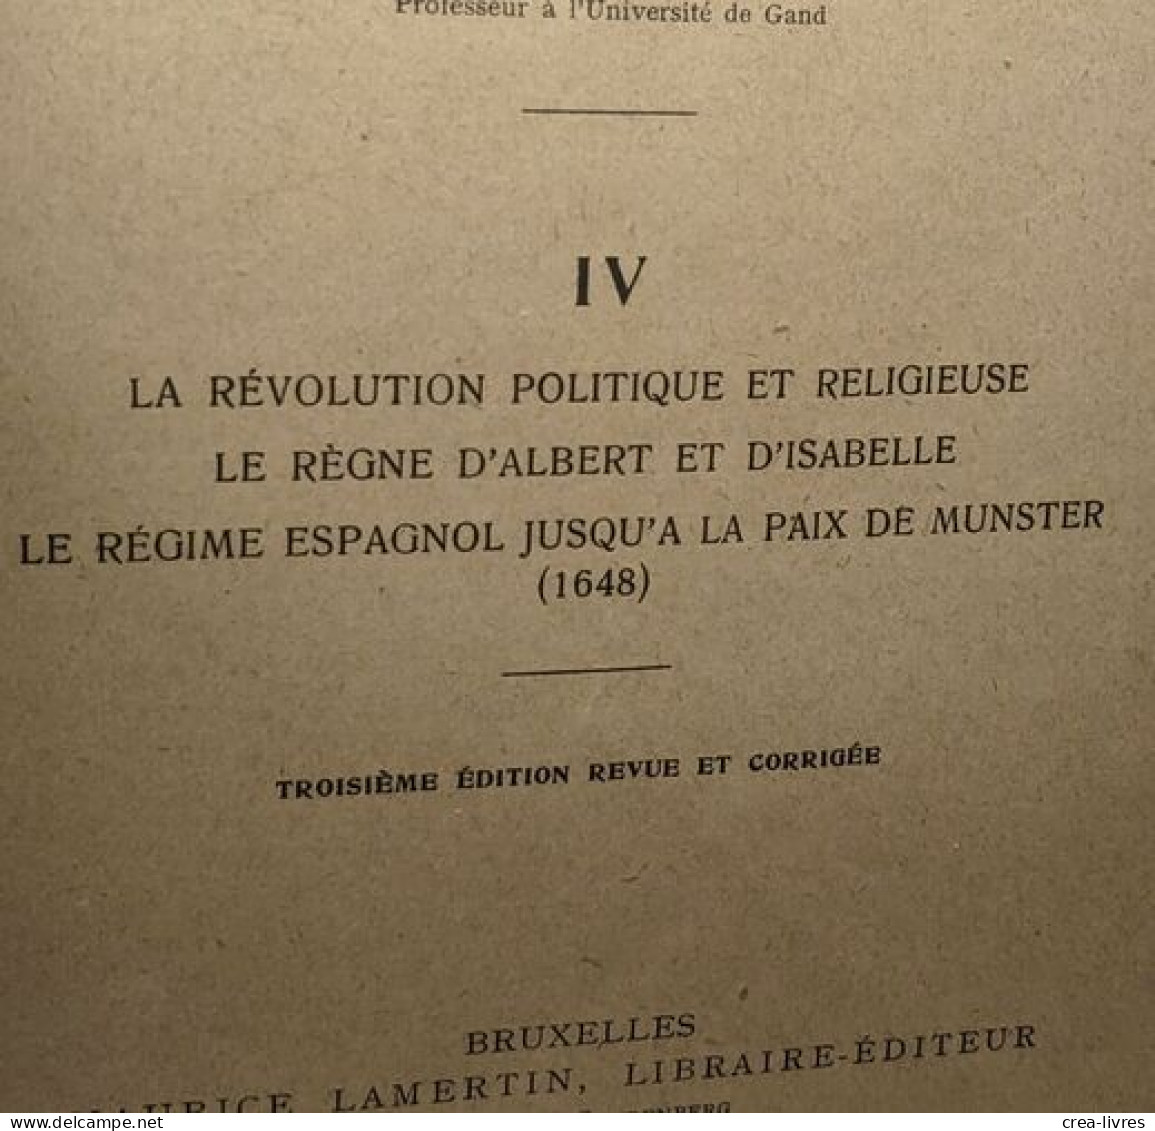 Histoire de la Belgique TOMES 1 (1929) 2 (1947) 3 (1953) 4 (1927) 5 (1921) et 7 (1948) (tome 6 manquant) -